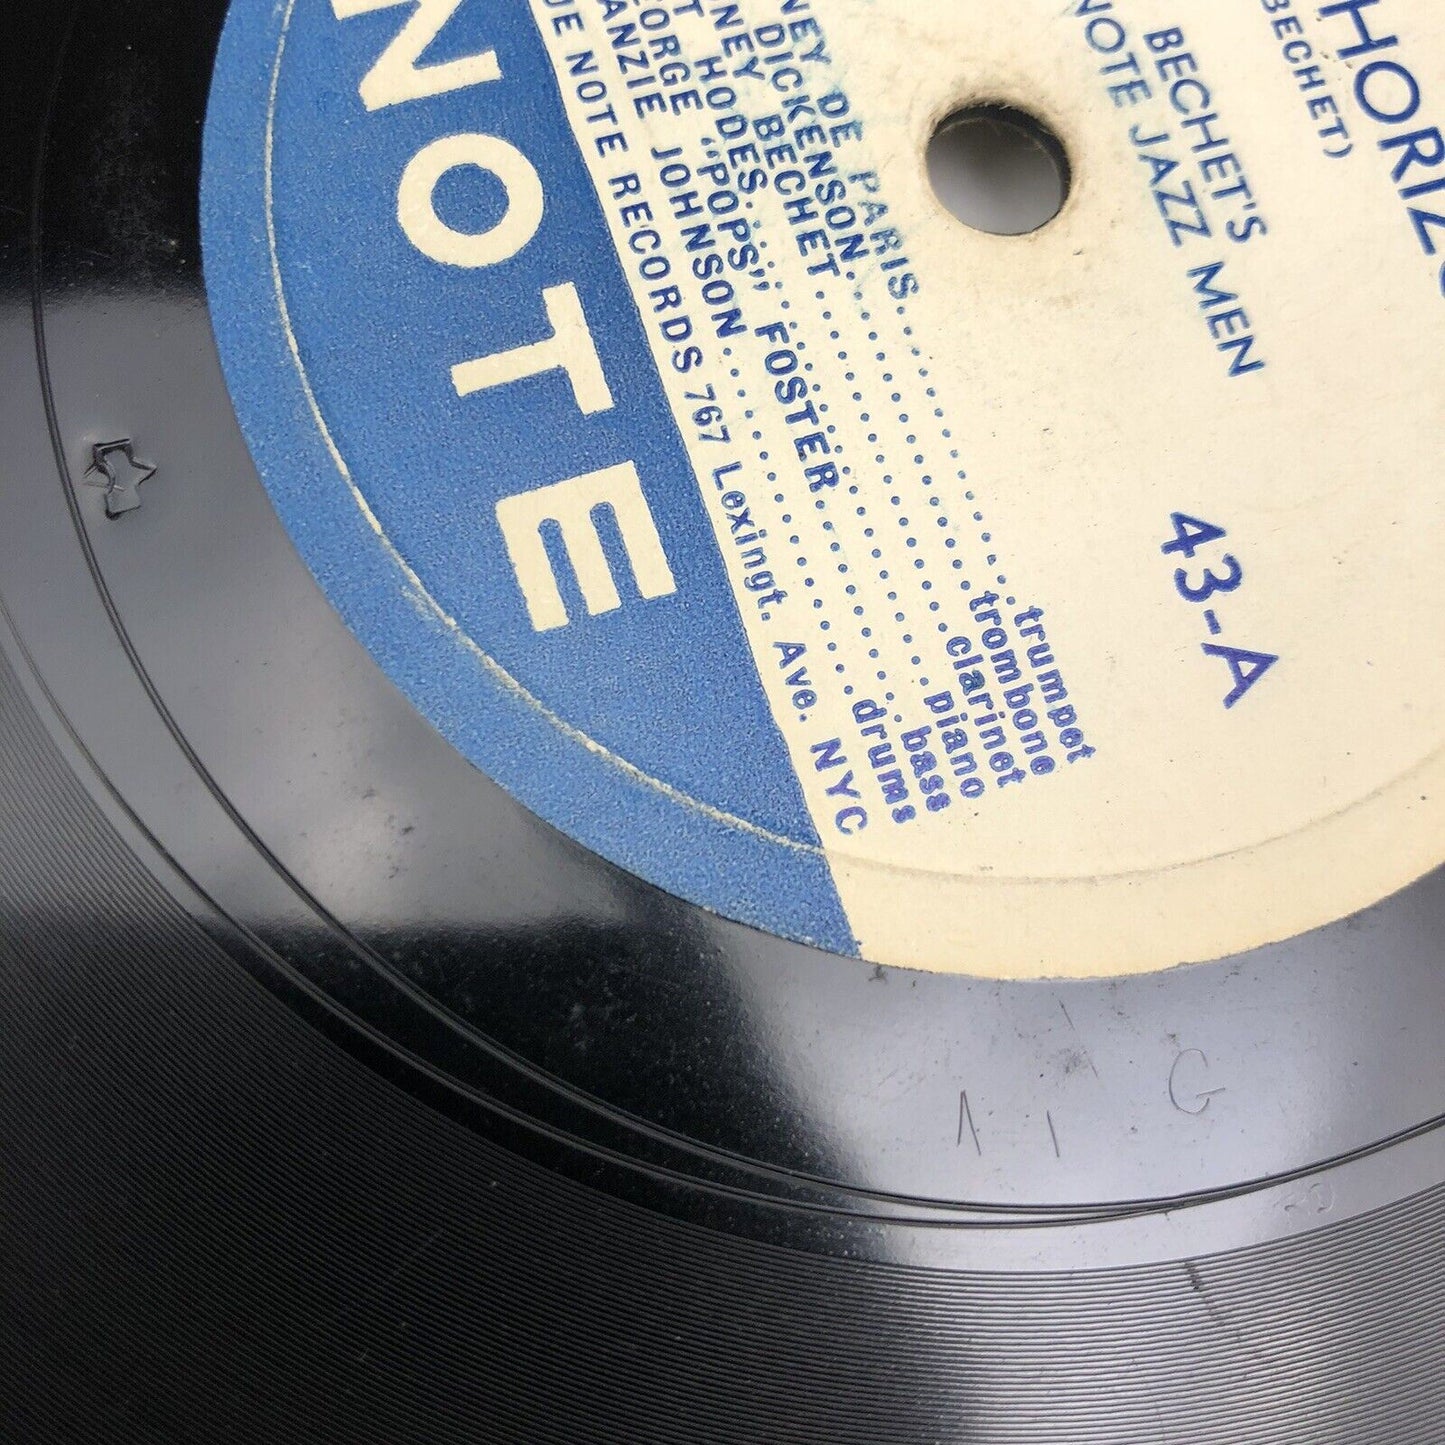 Blue Note #43 Sidney Bechet Jazz Men 78 RPM 12” Blue Horizon / Muskrat Ramble